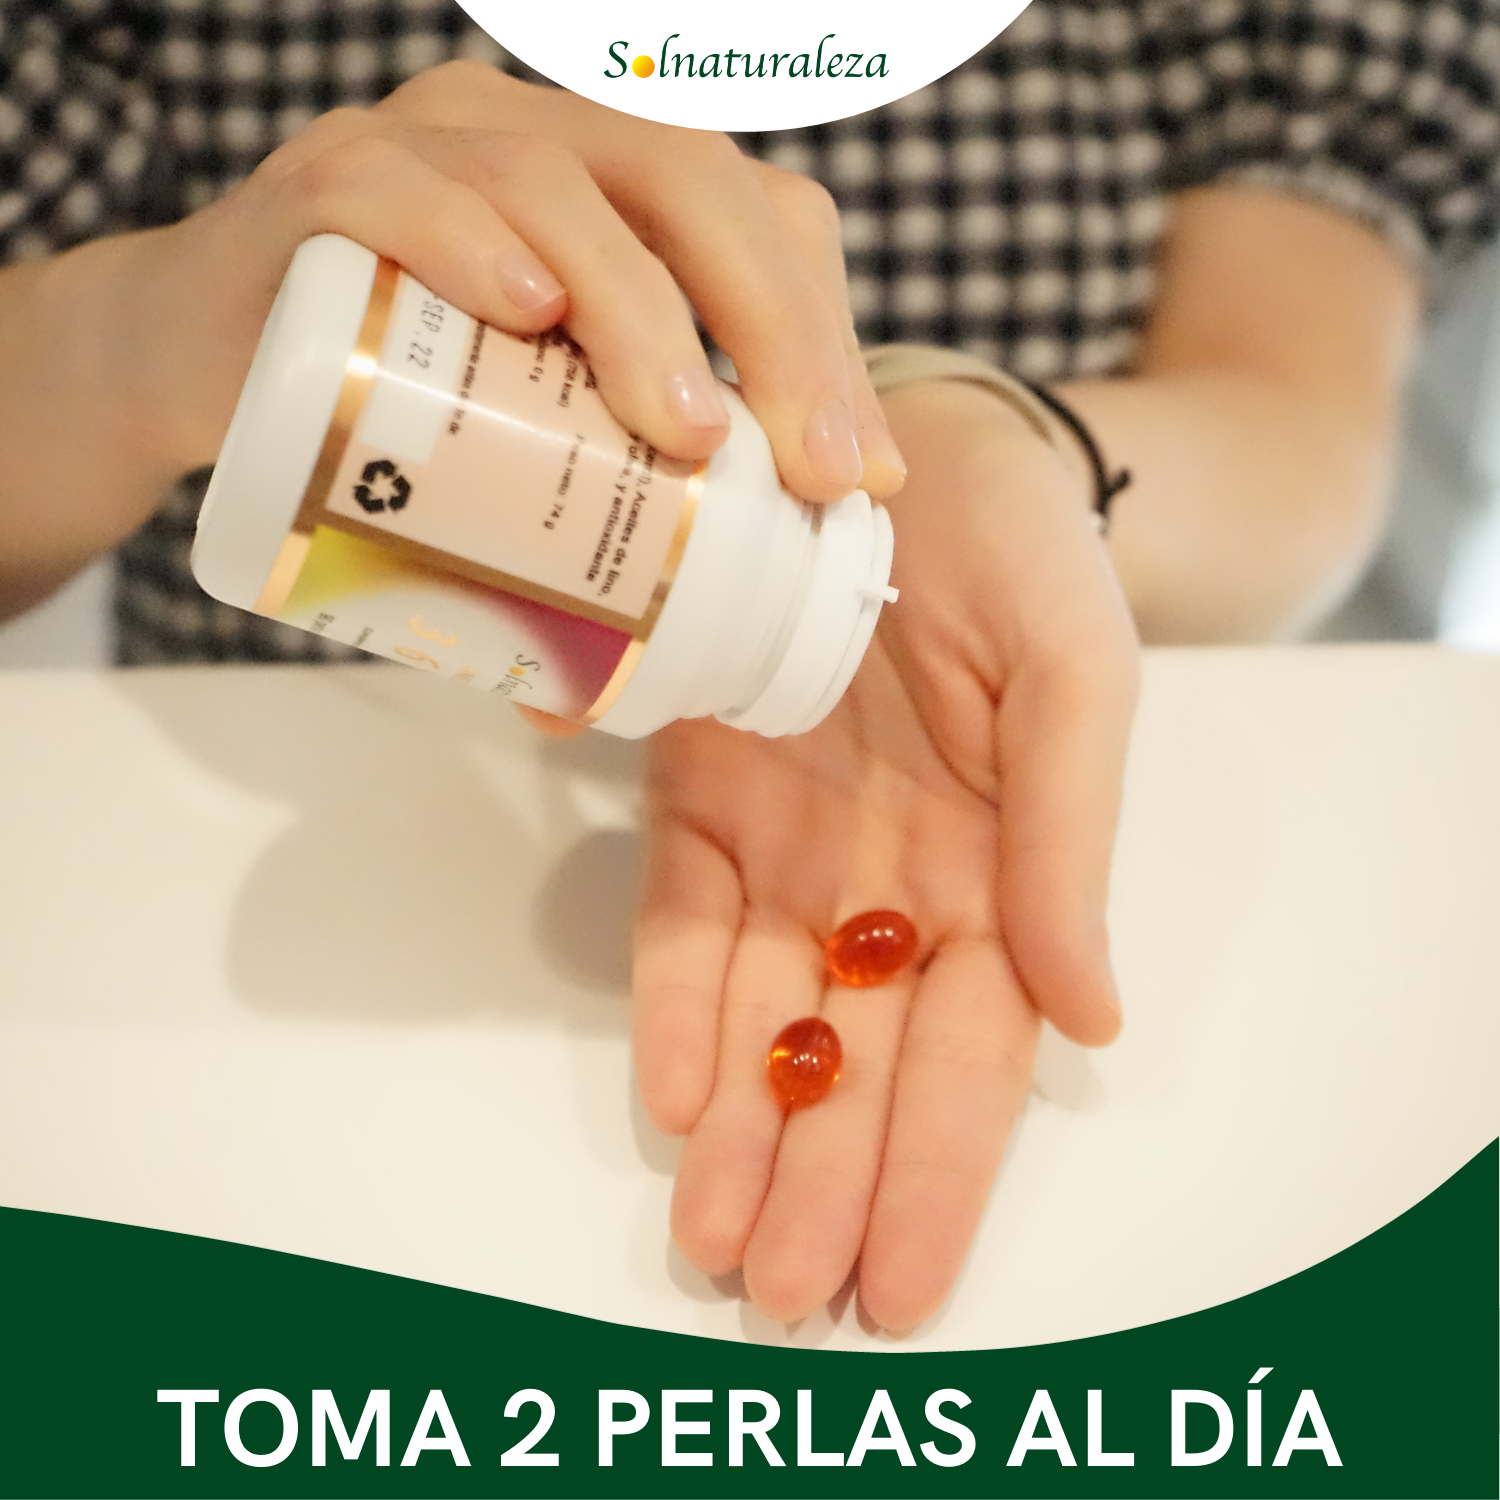 Con Omegas 3,6,7,9, CONTROLA EL COLESTEROL (90 perlas de 822 mg)